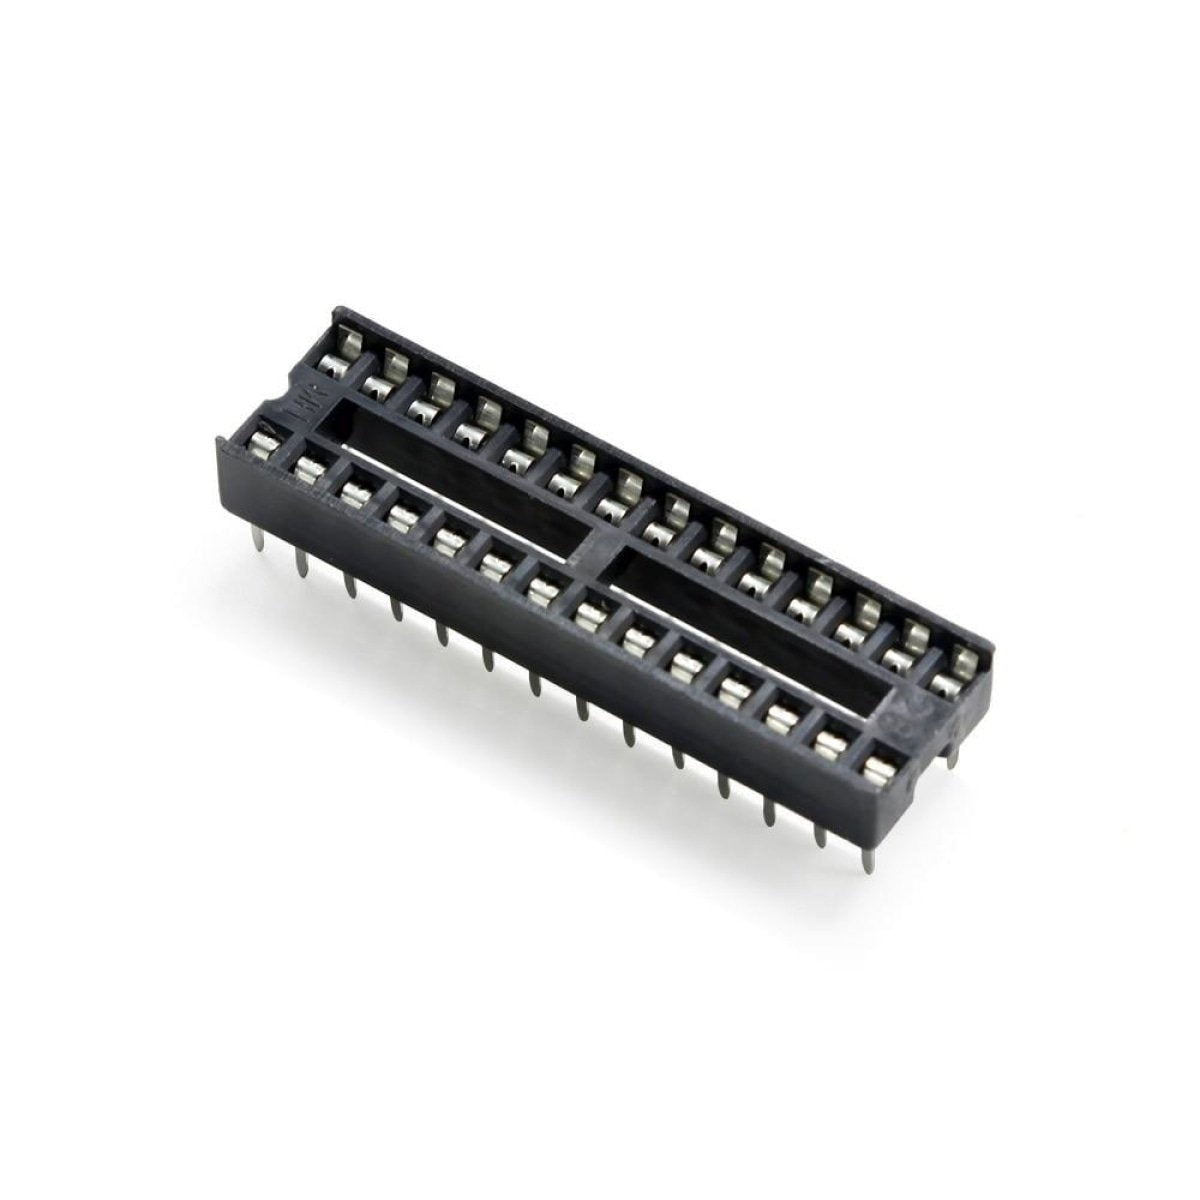 2pcs DIP IC Adaptor Solder Socket 6, 8, 14, 16, 18, 20, 24, 28, 32 Pin - 28 pins - - Asia Sell